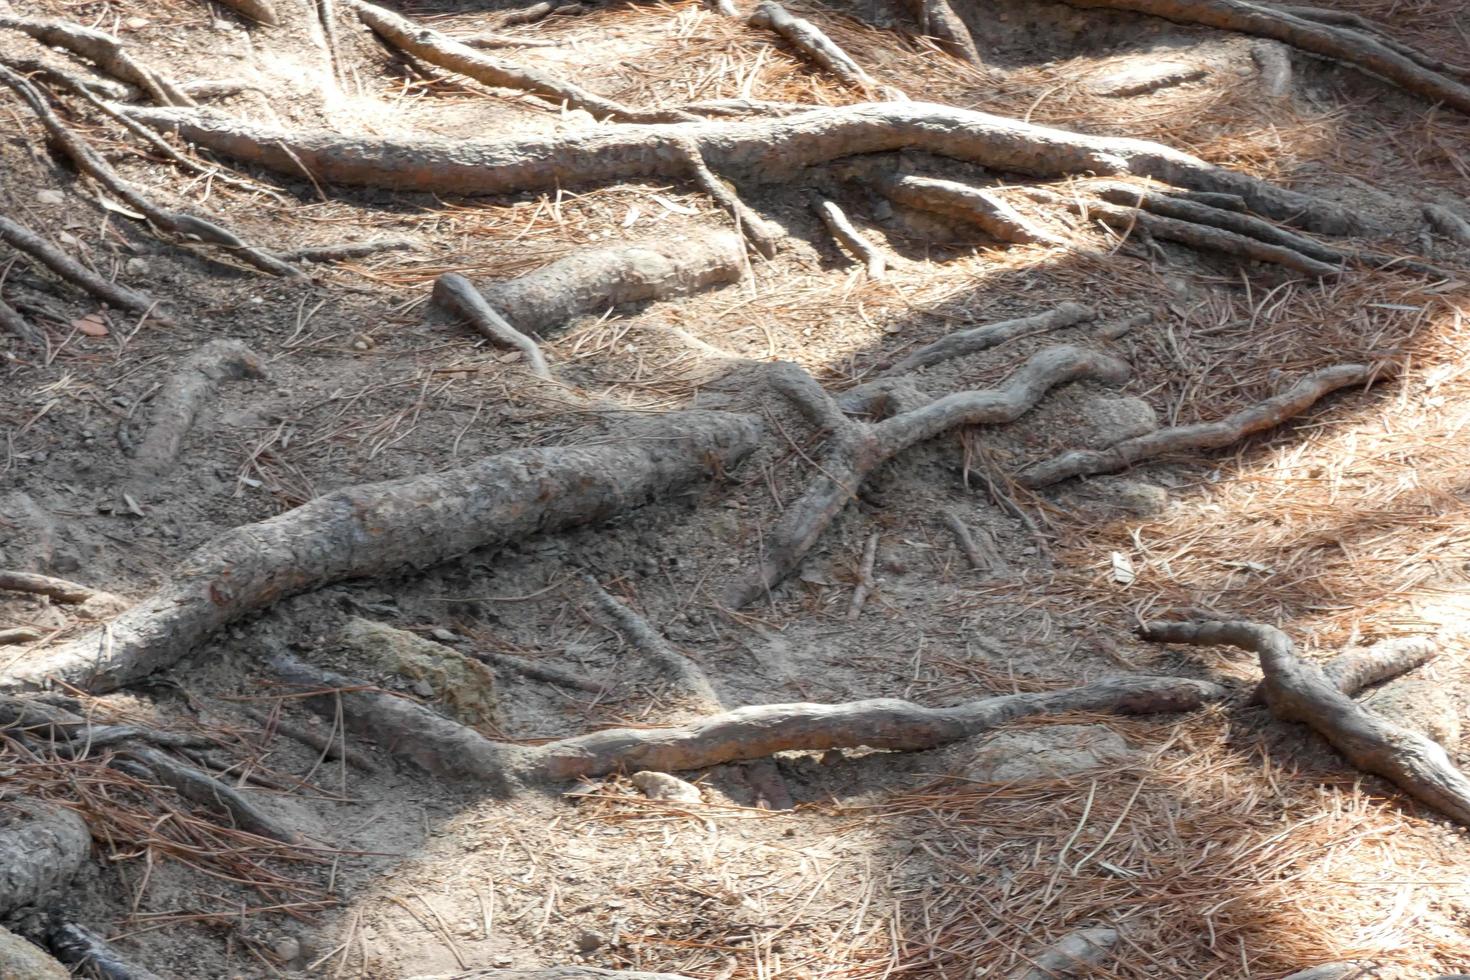 raíces de pino que salen del suelo en busca de agua y nutrientes foto